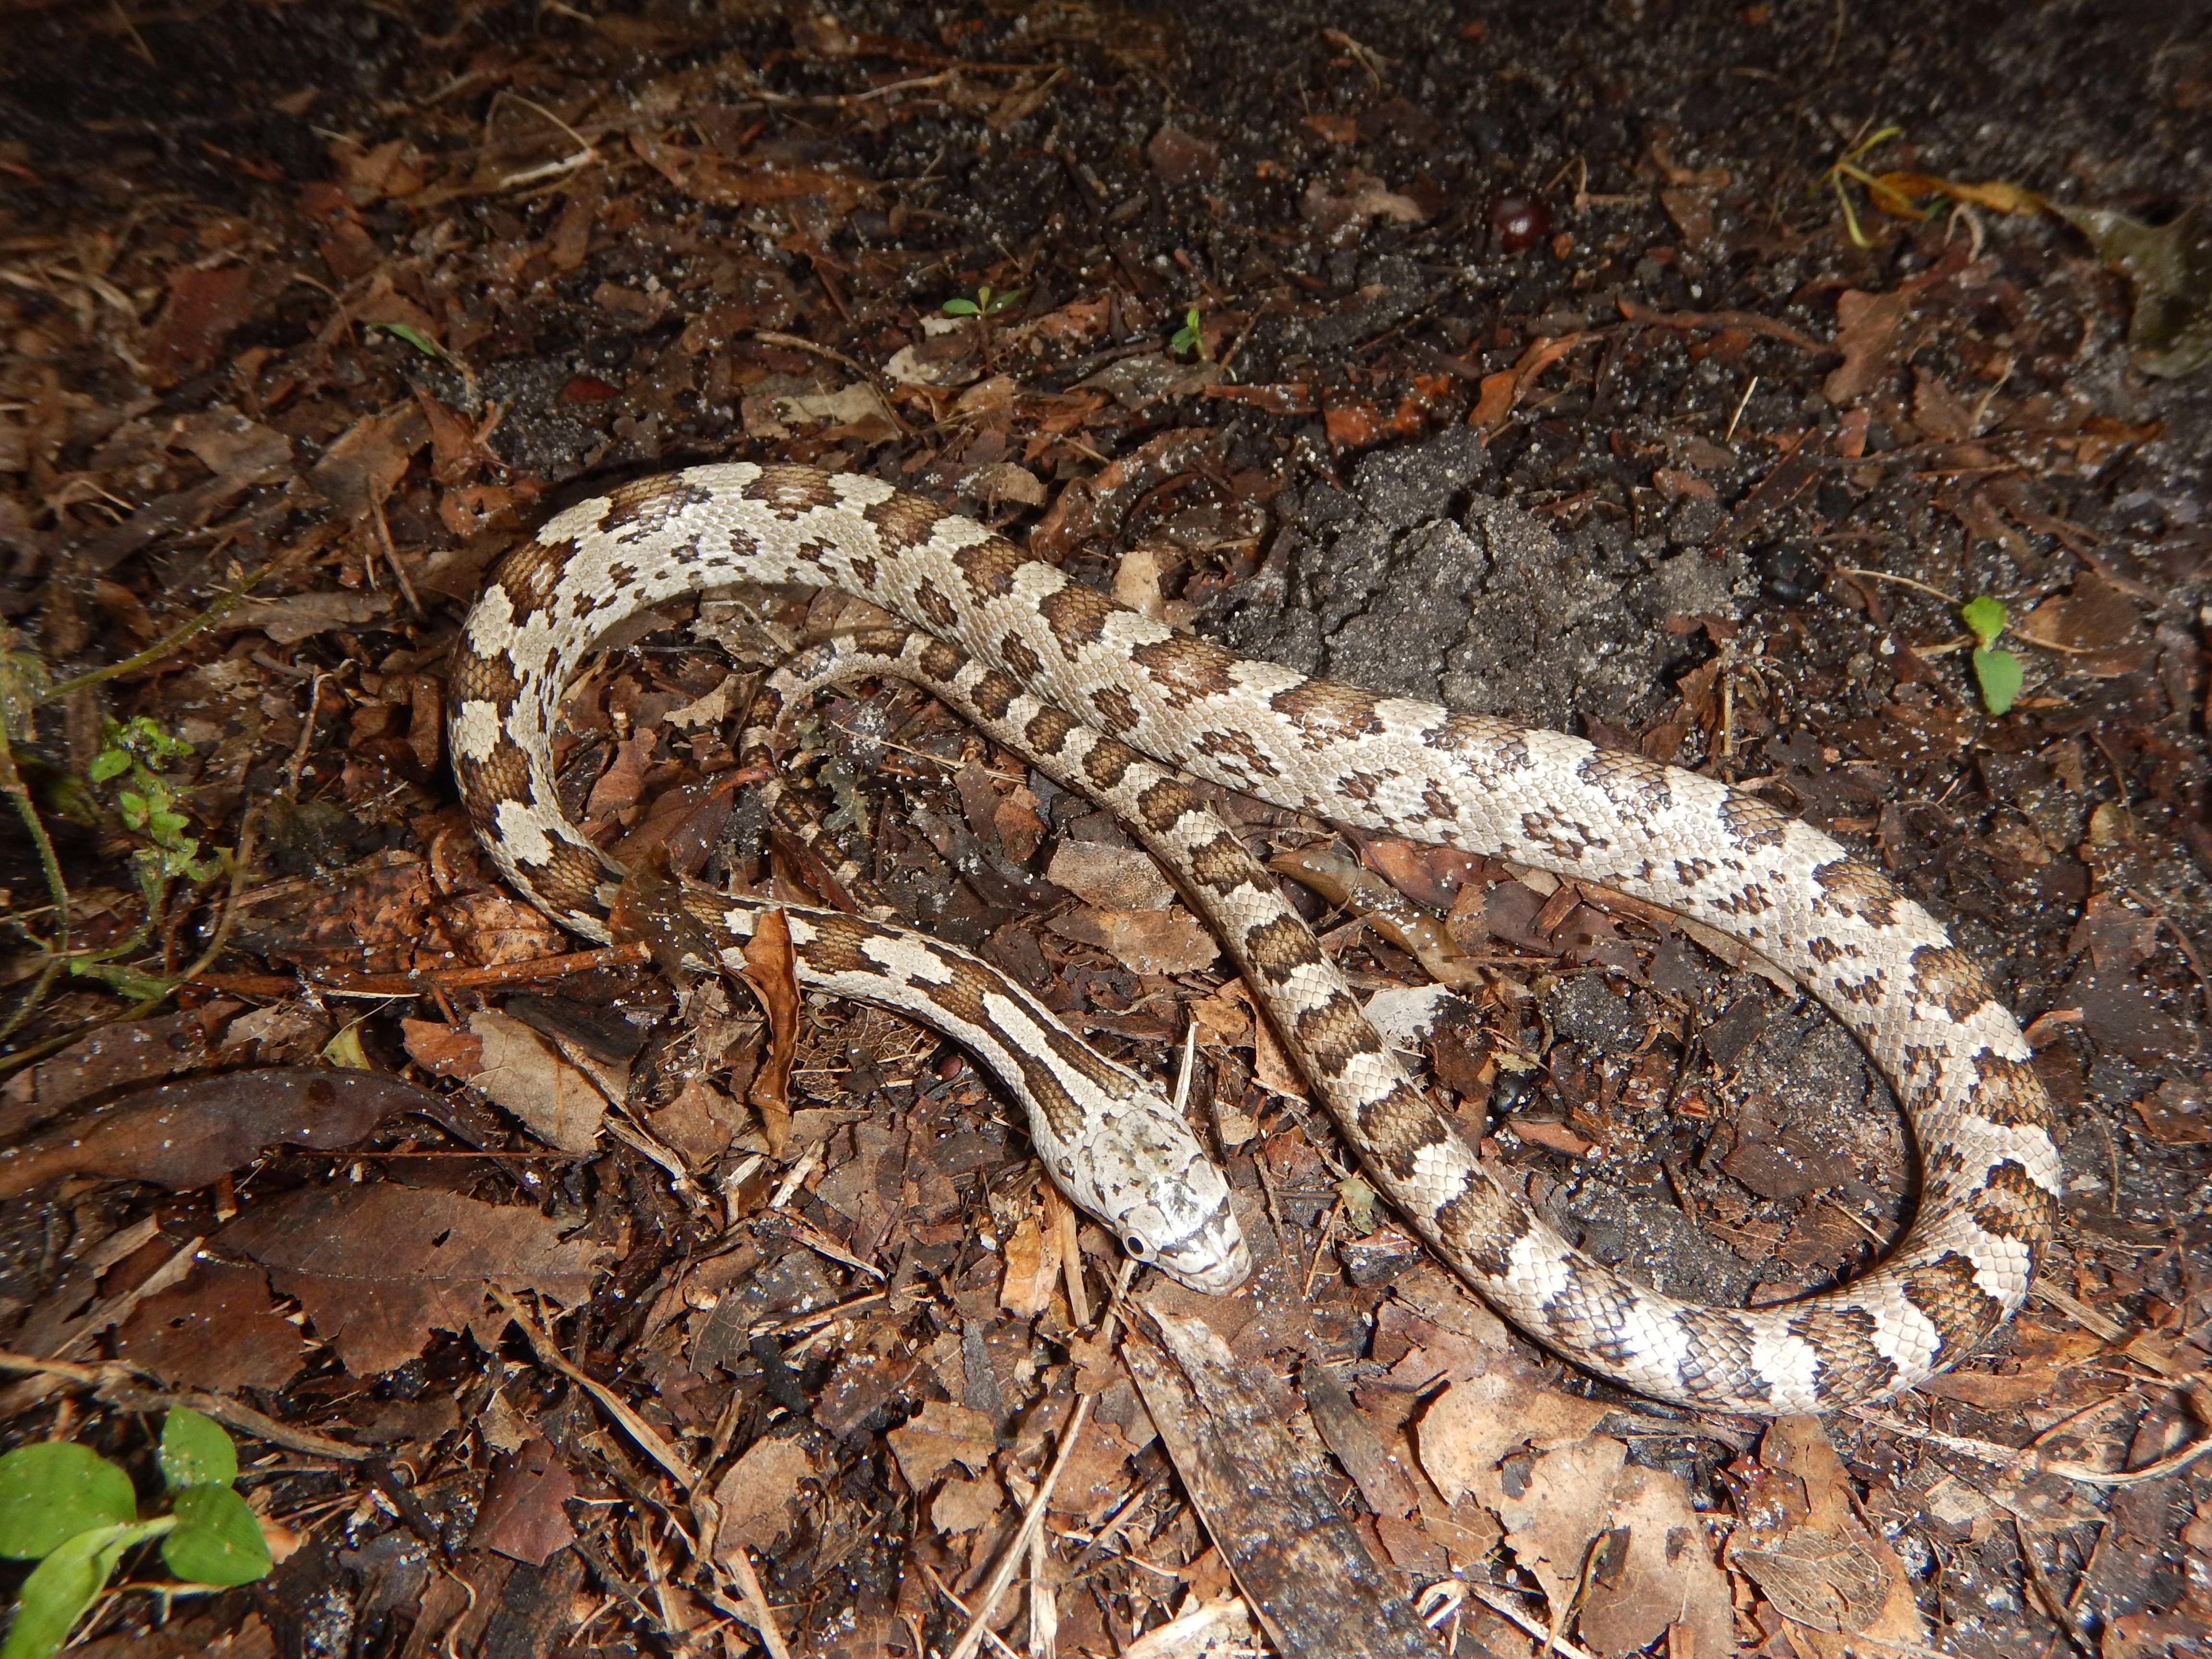 Ratonera oriental juvenil: las marcas son típicas de las serpientes ratoneras juveniles.